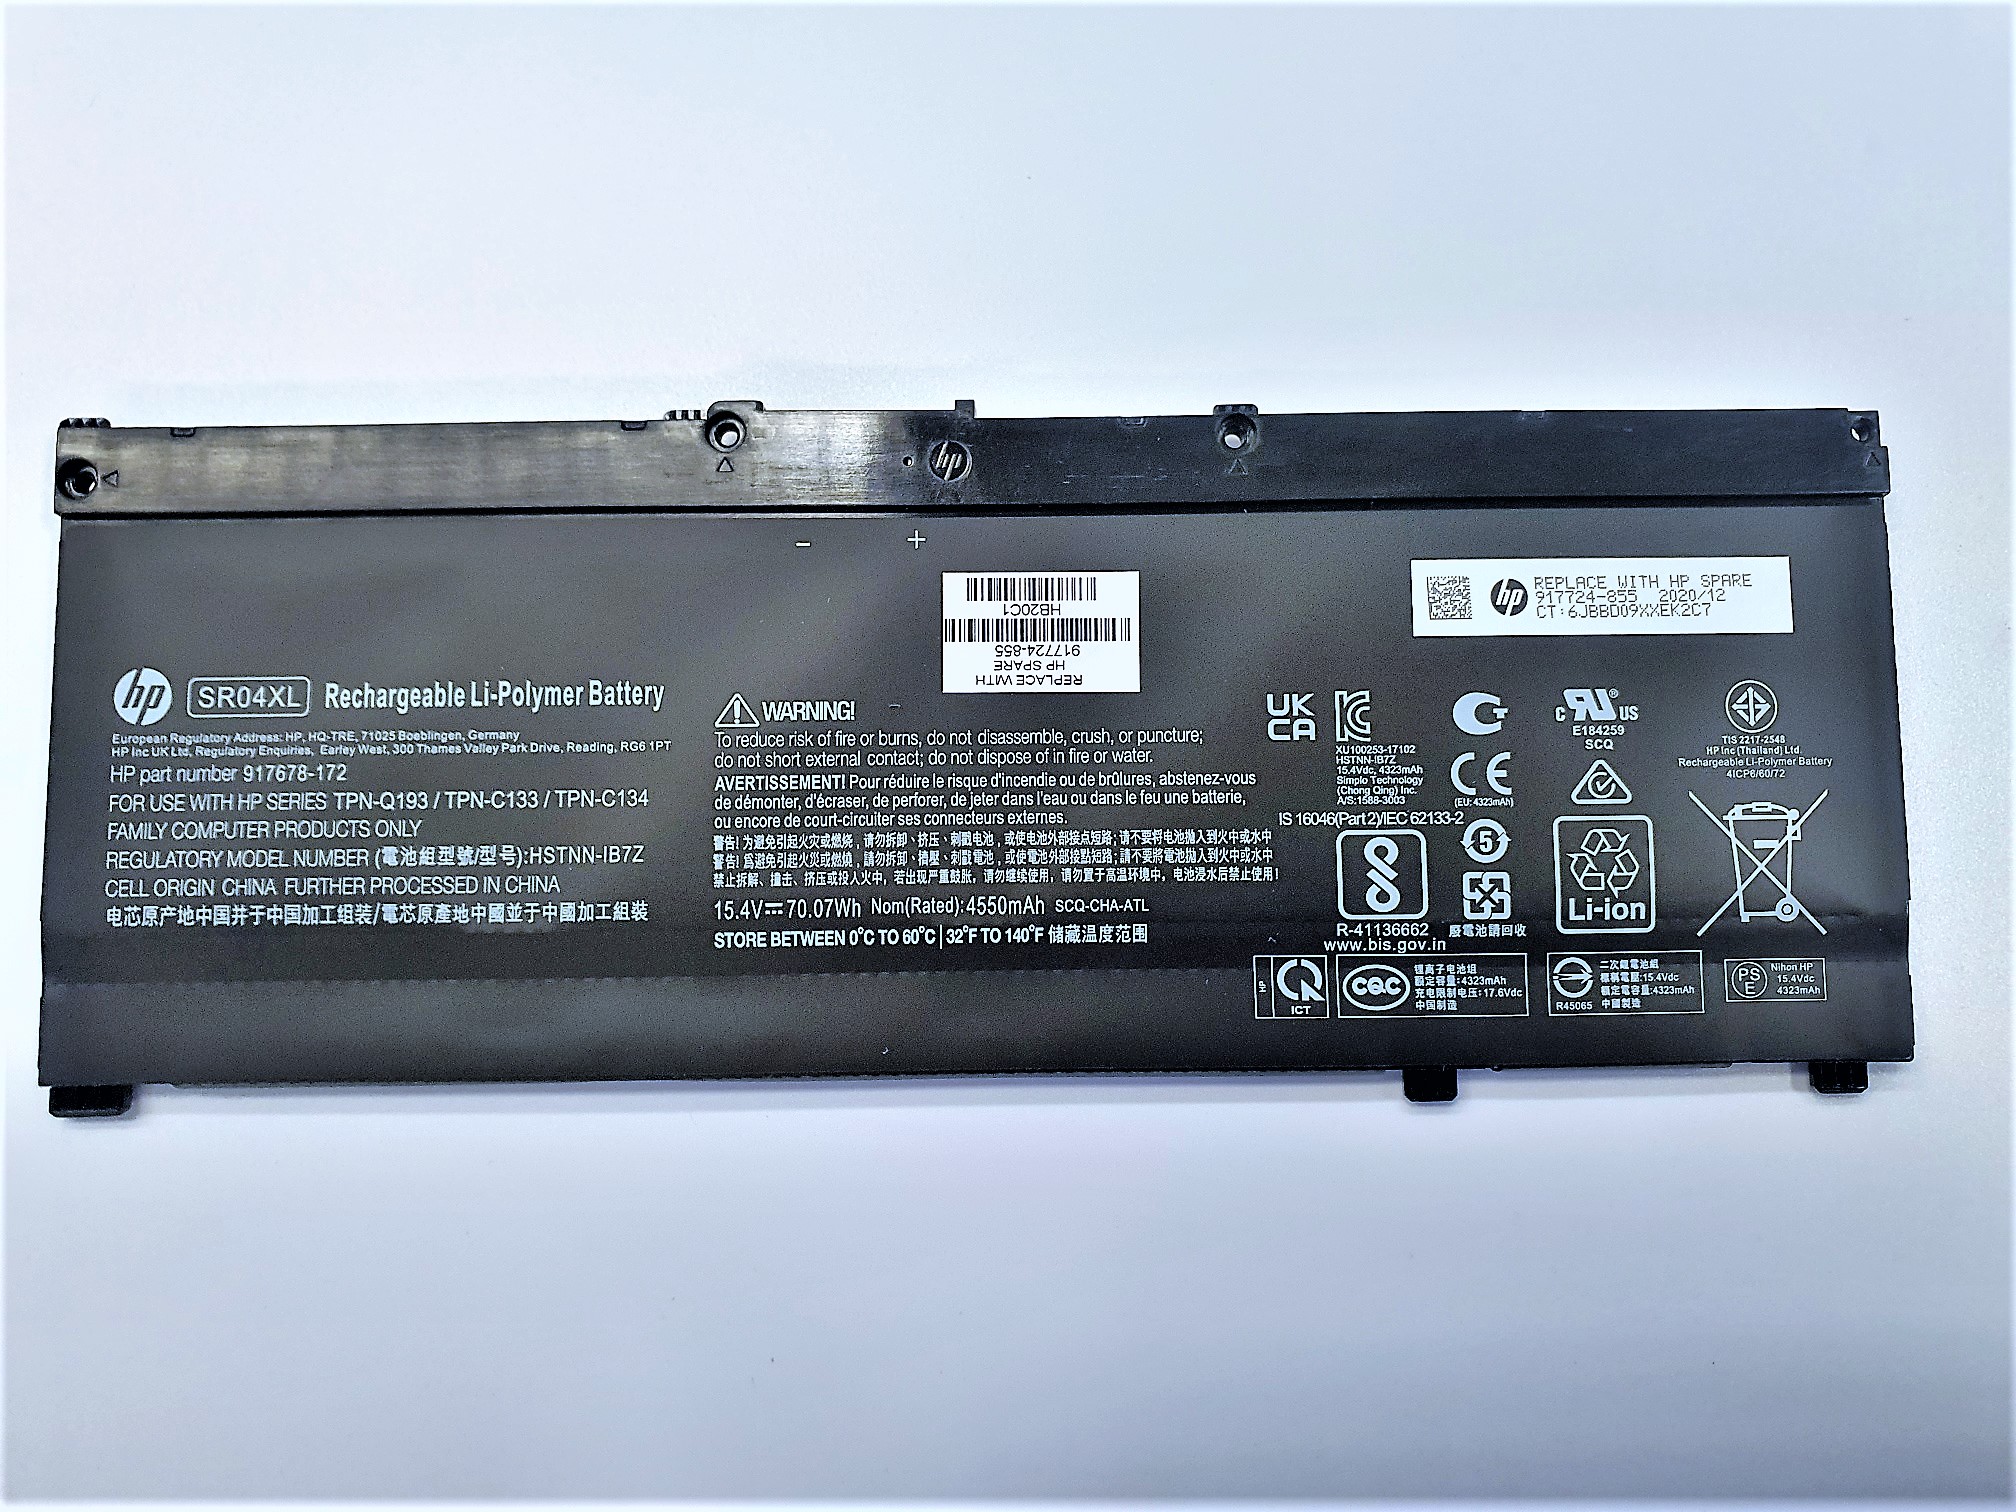 OMEN by HP Laptop 17-cb0002TX (7ME31PA) Battery 917724-855